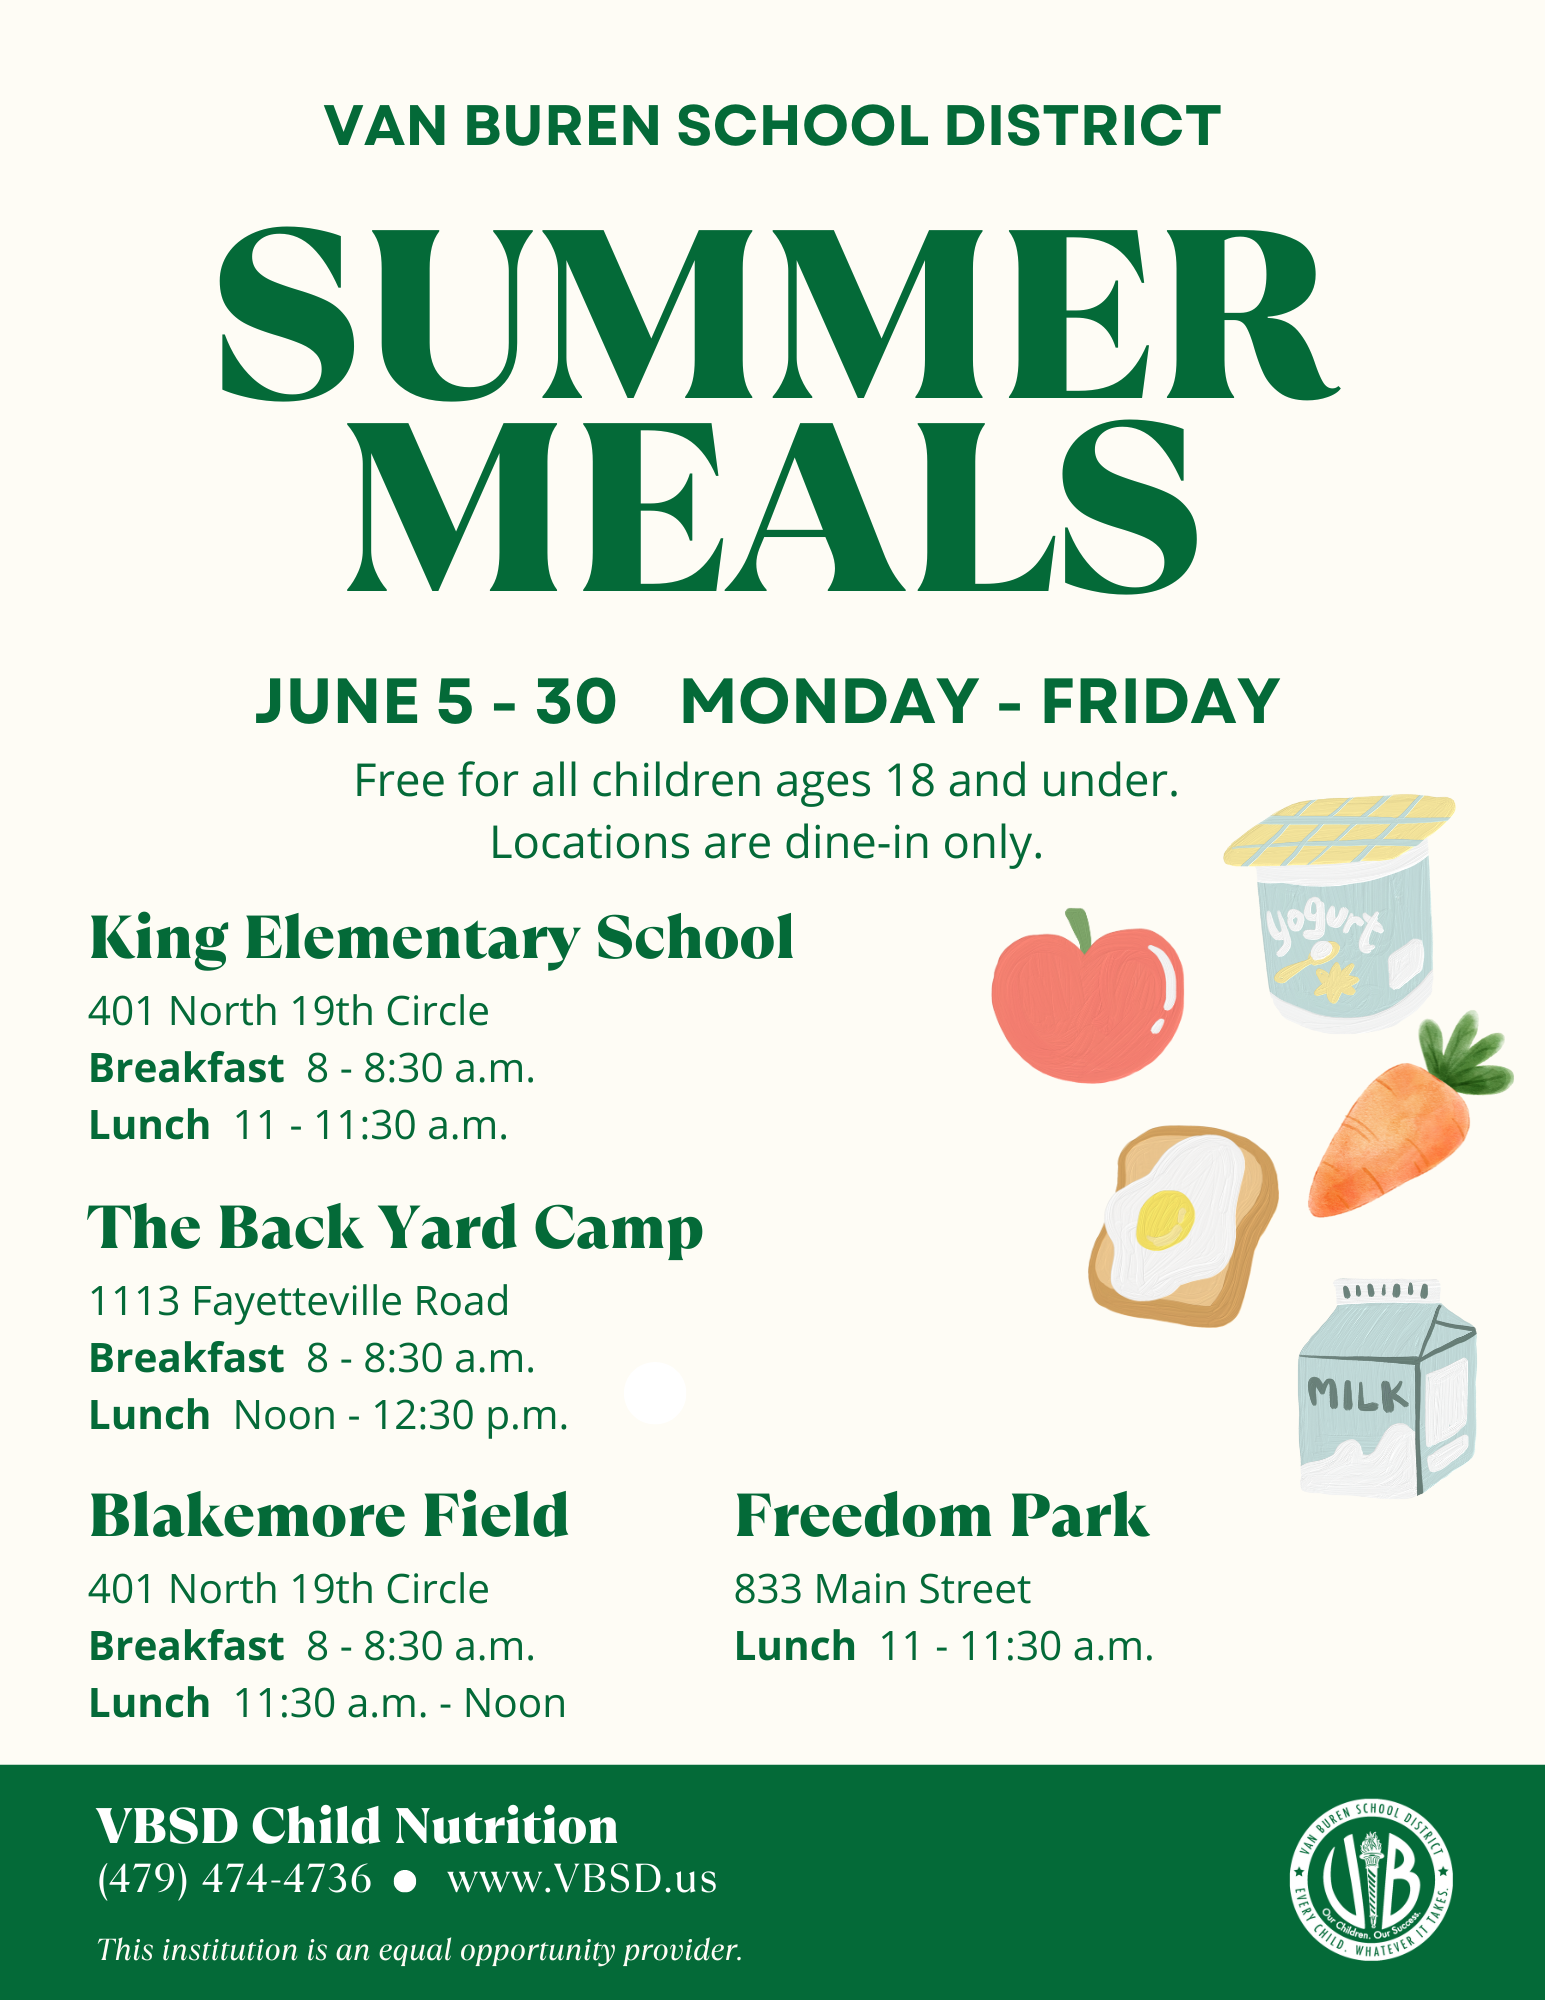 VBSD Summer Meals to run June 5 -30